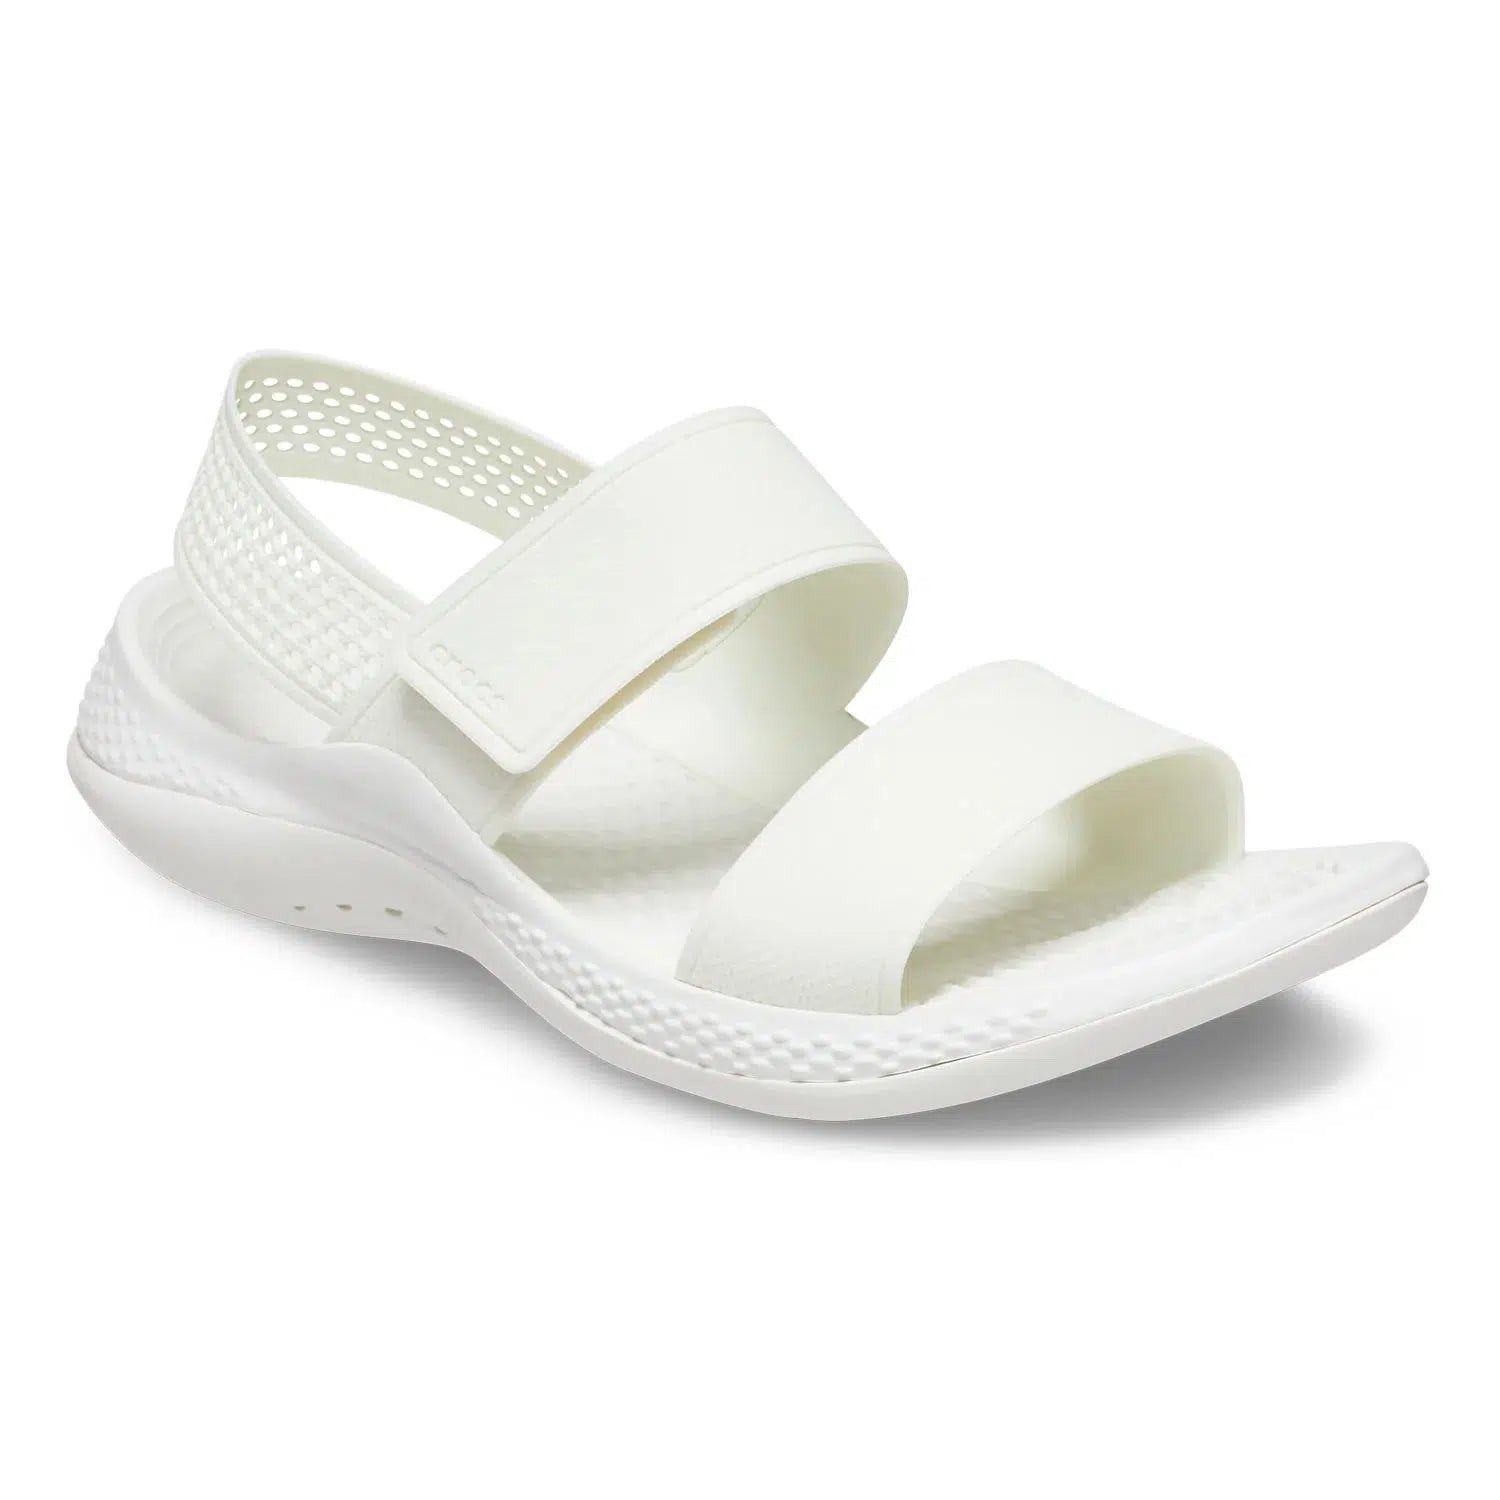 Buy Crocs Women's LiteRide Fresco Sling Back Sandals for Women at Best  Price @ Tata CLiQ